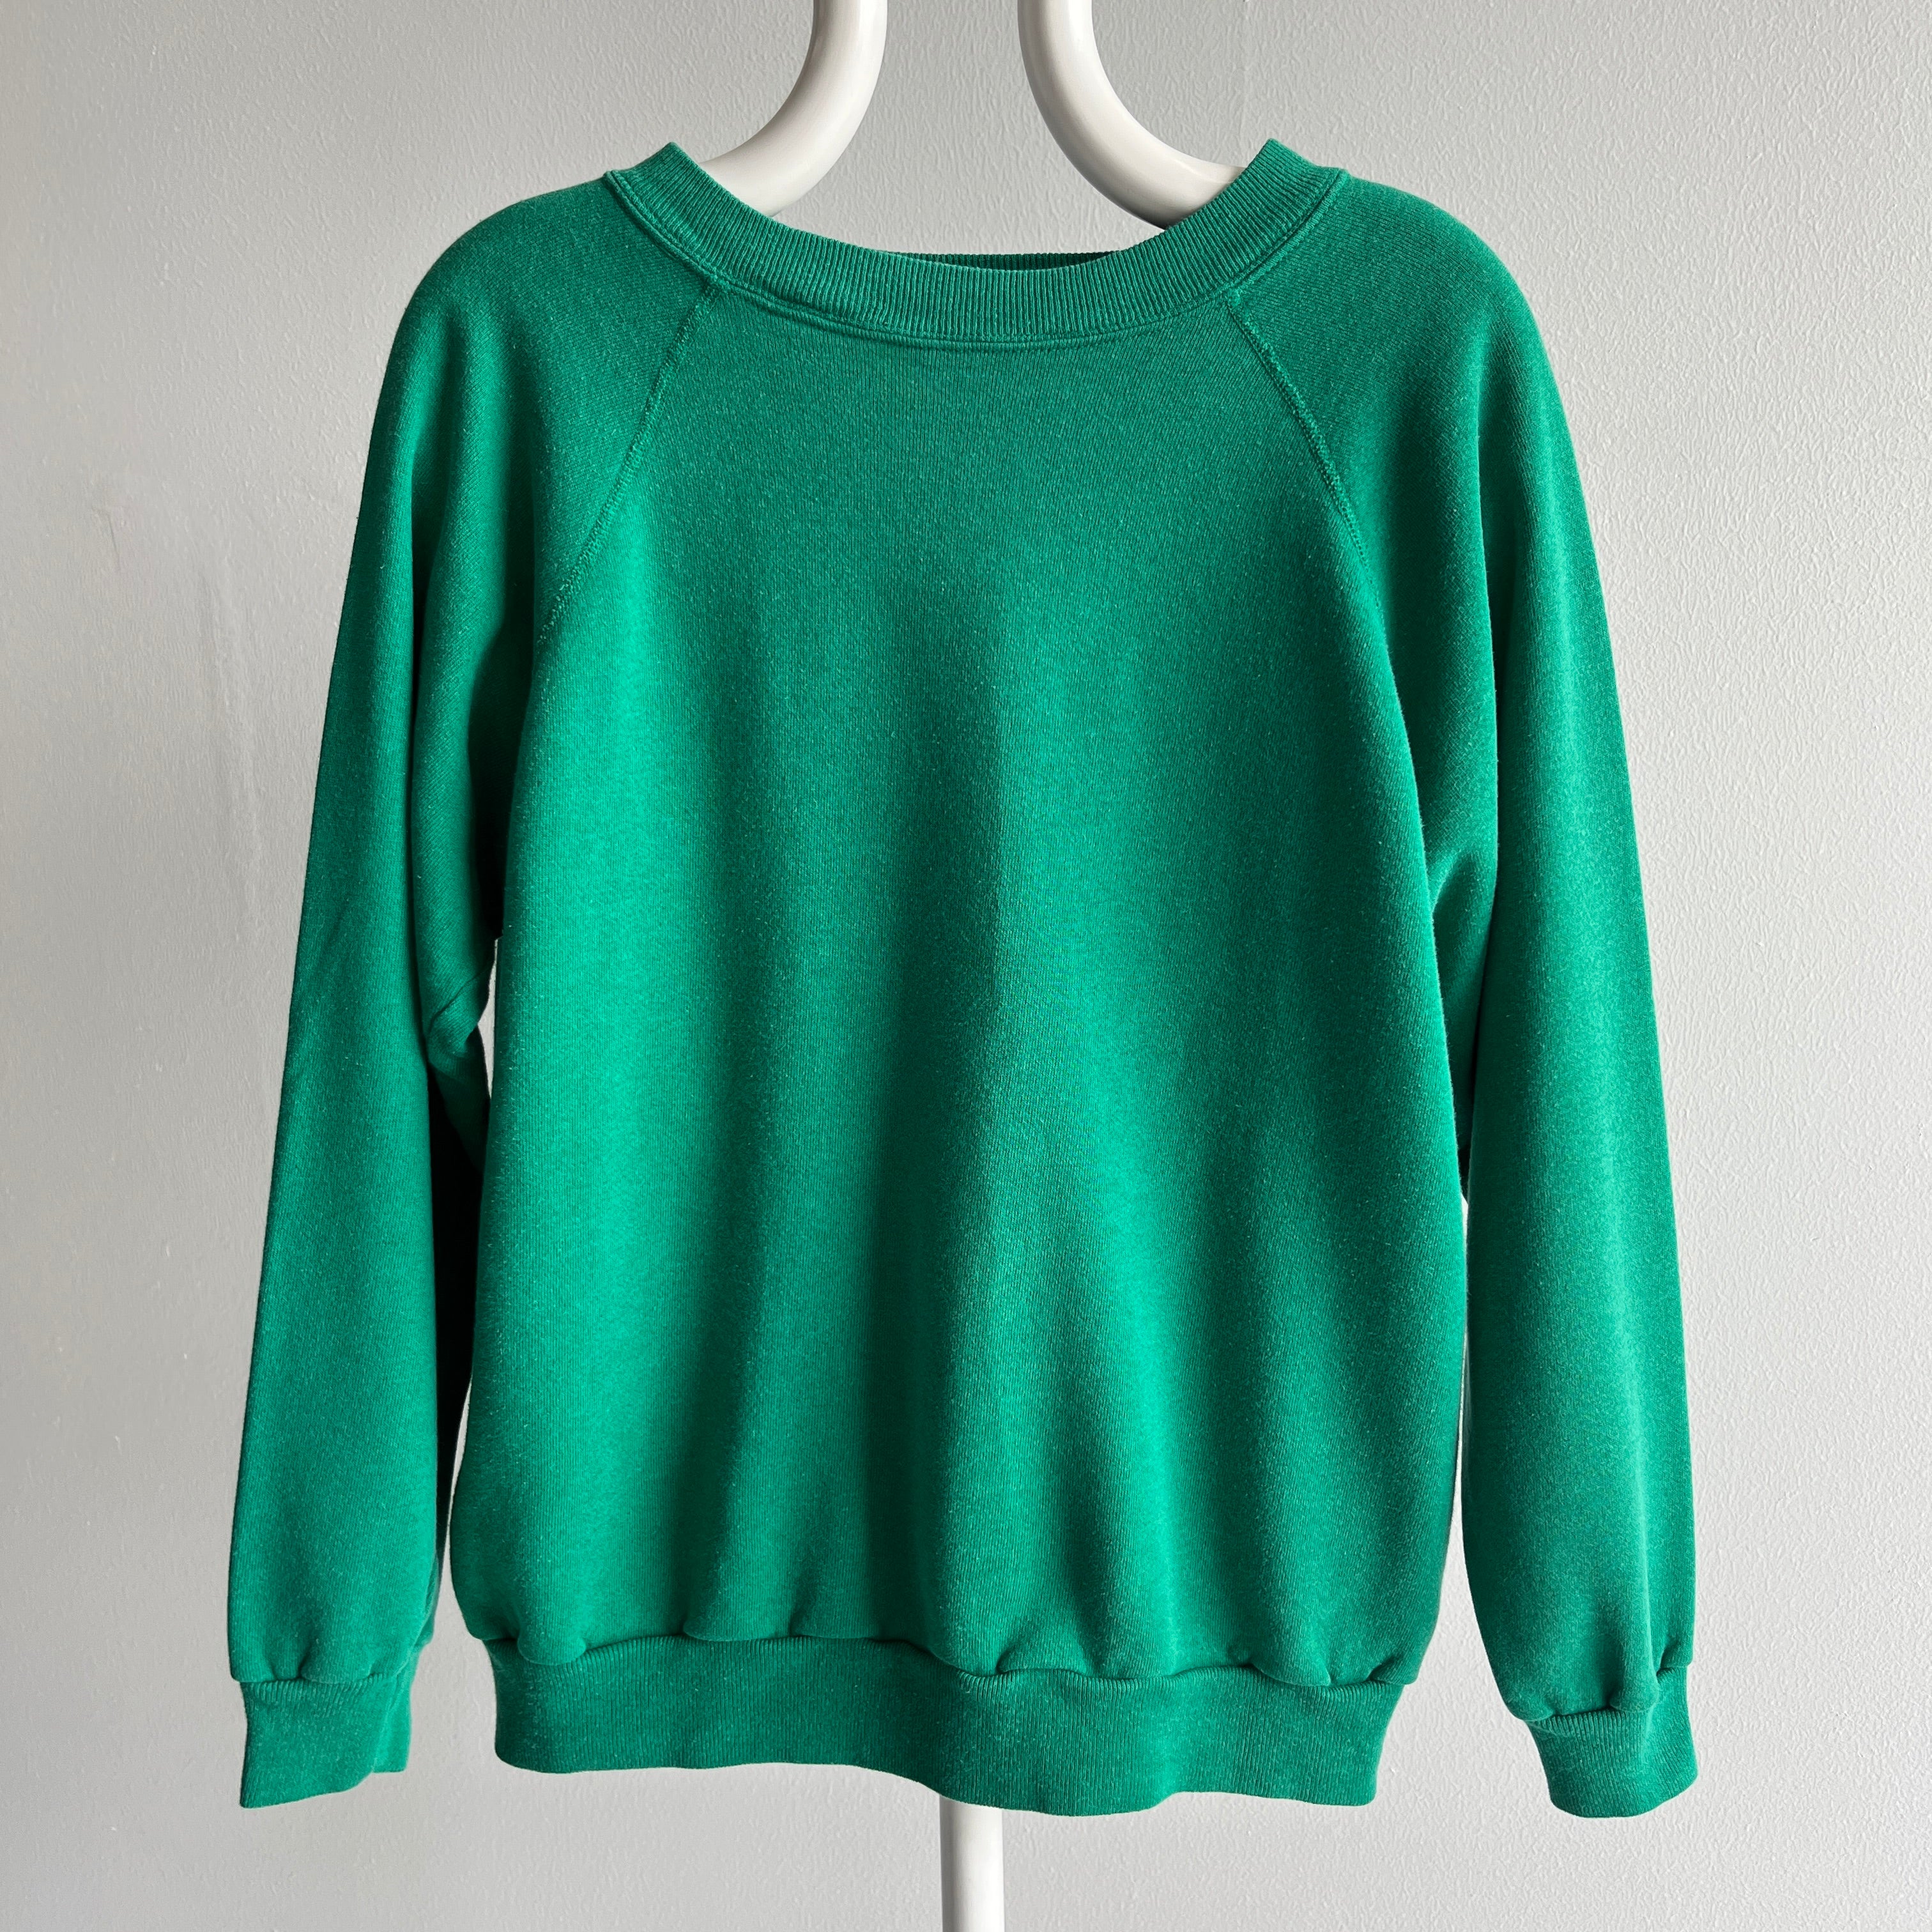 1980s Kelly Green Raglan Sweatshirt - A Gem!